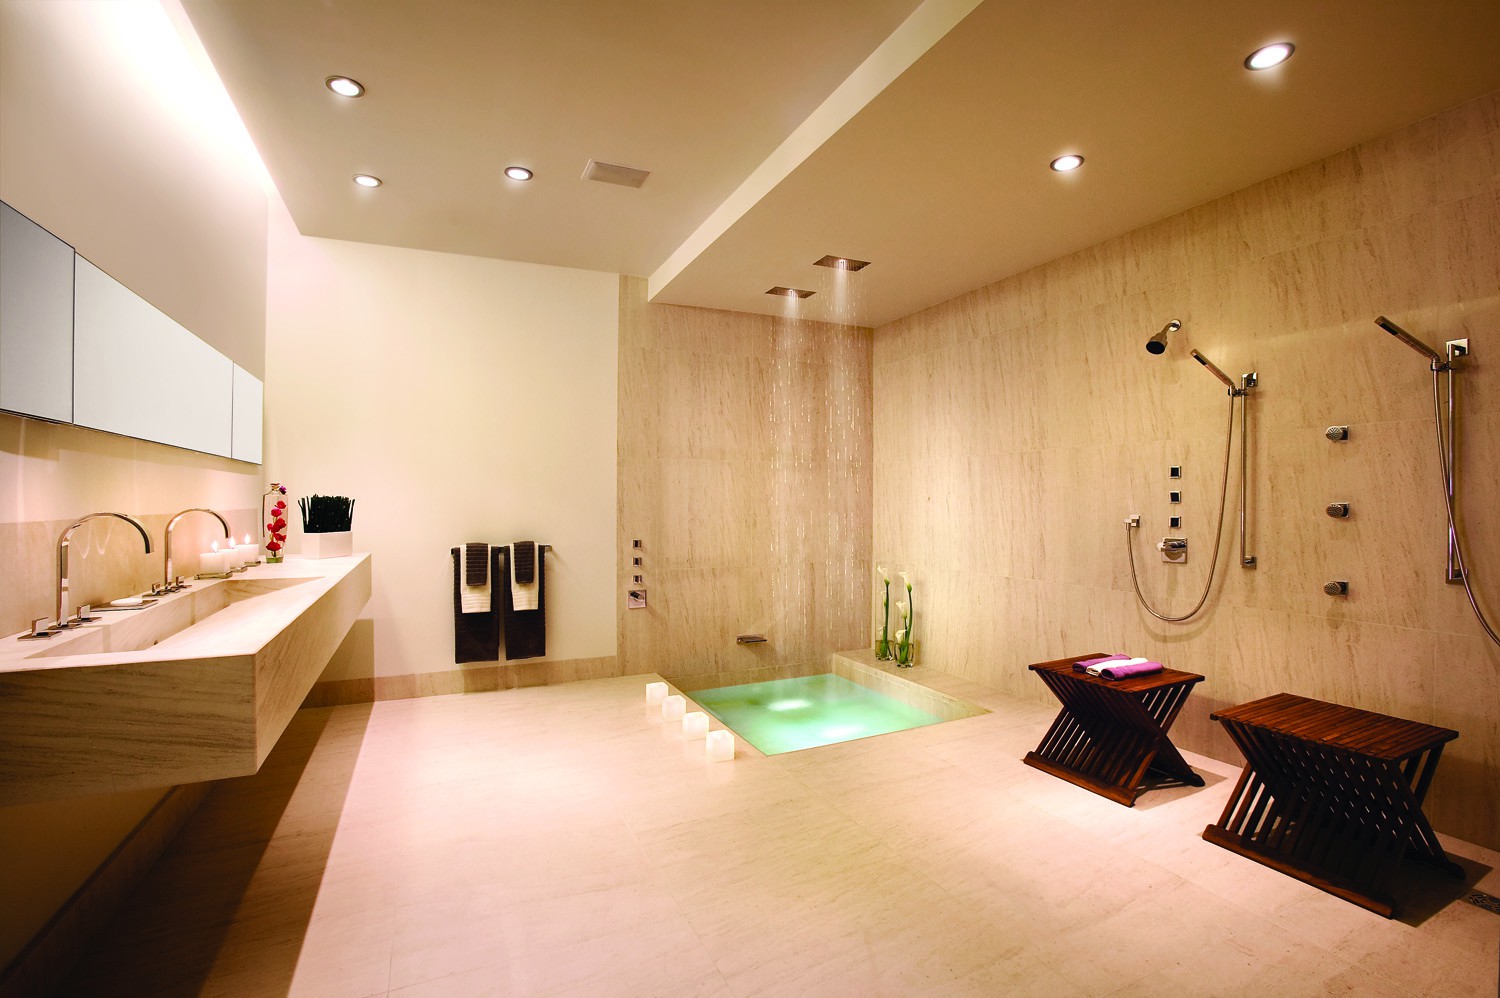 Bathroom - Apogee Condominium Marketing Center